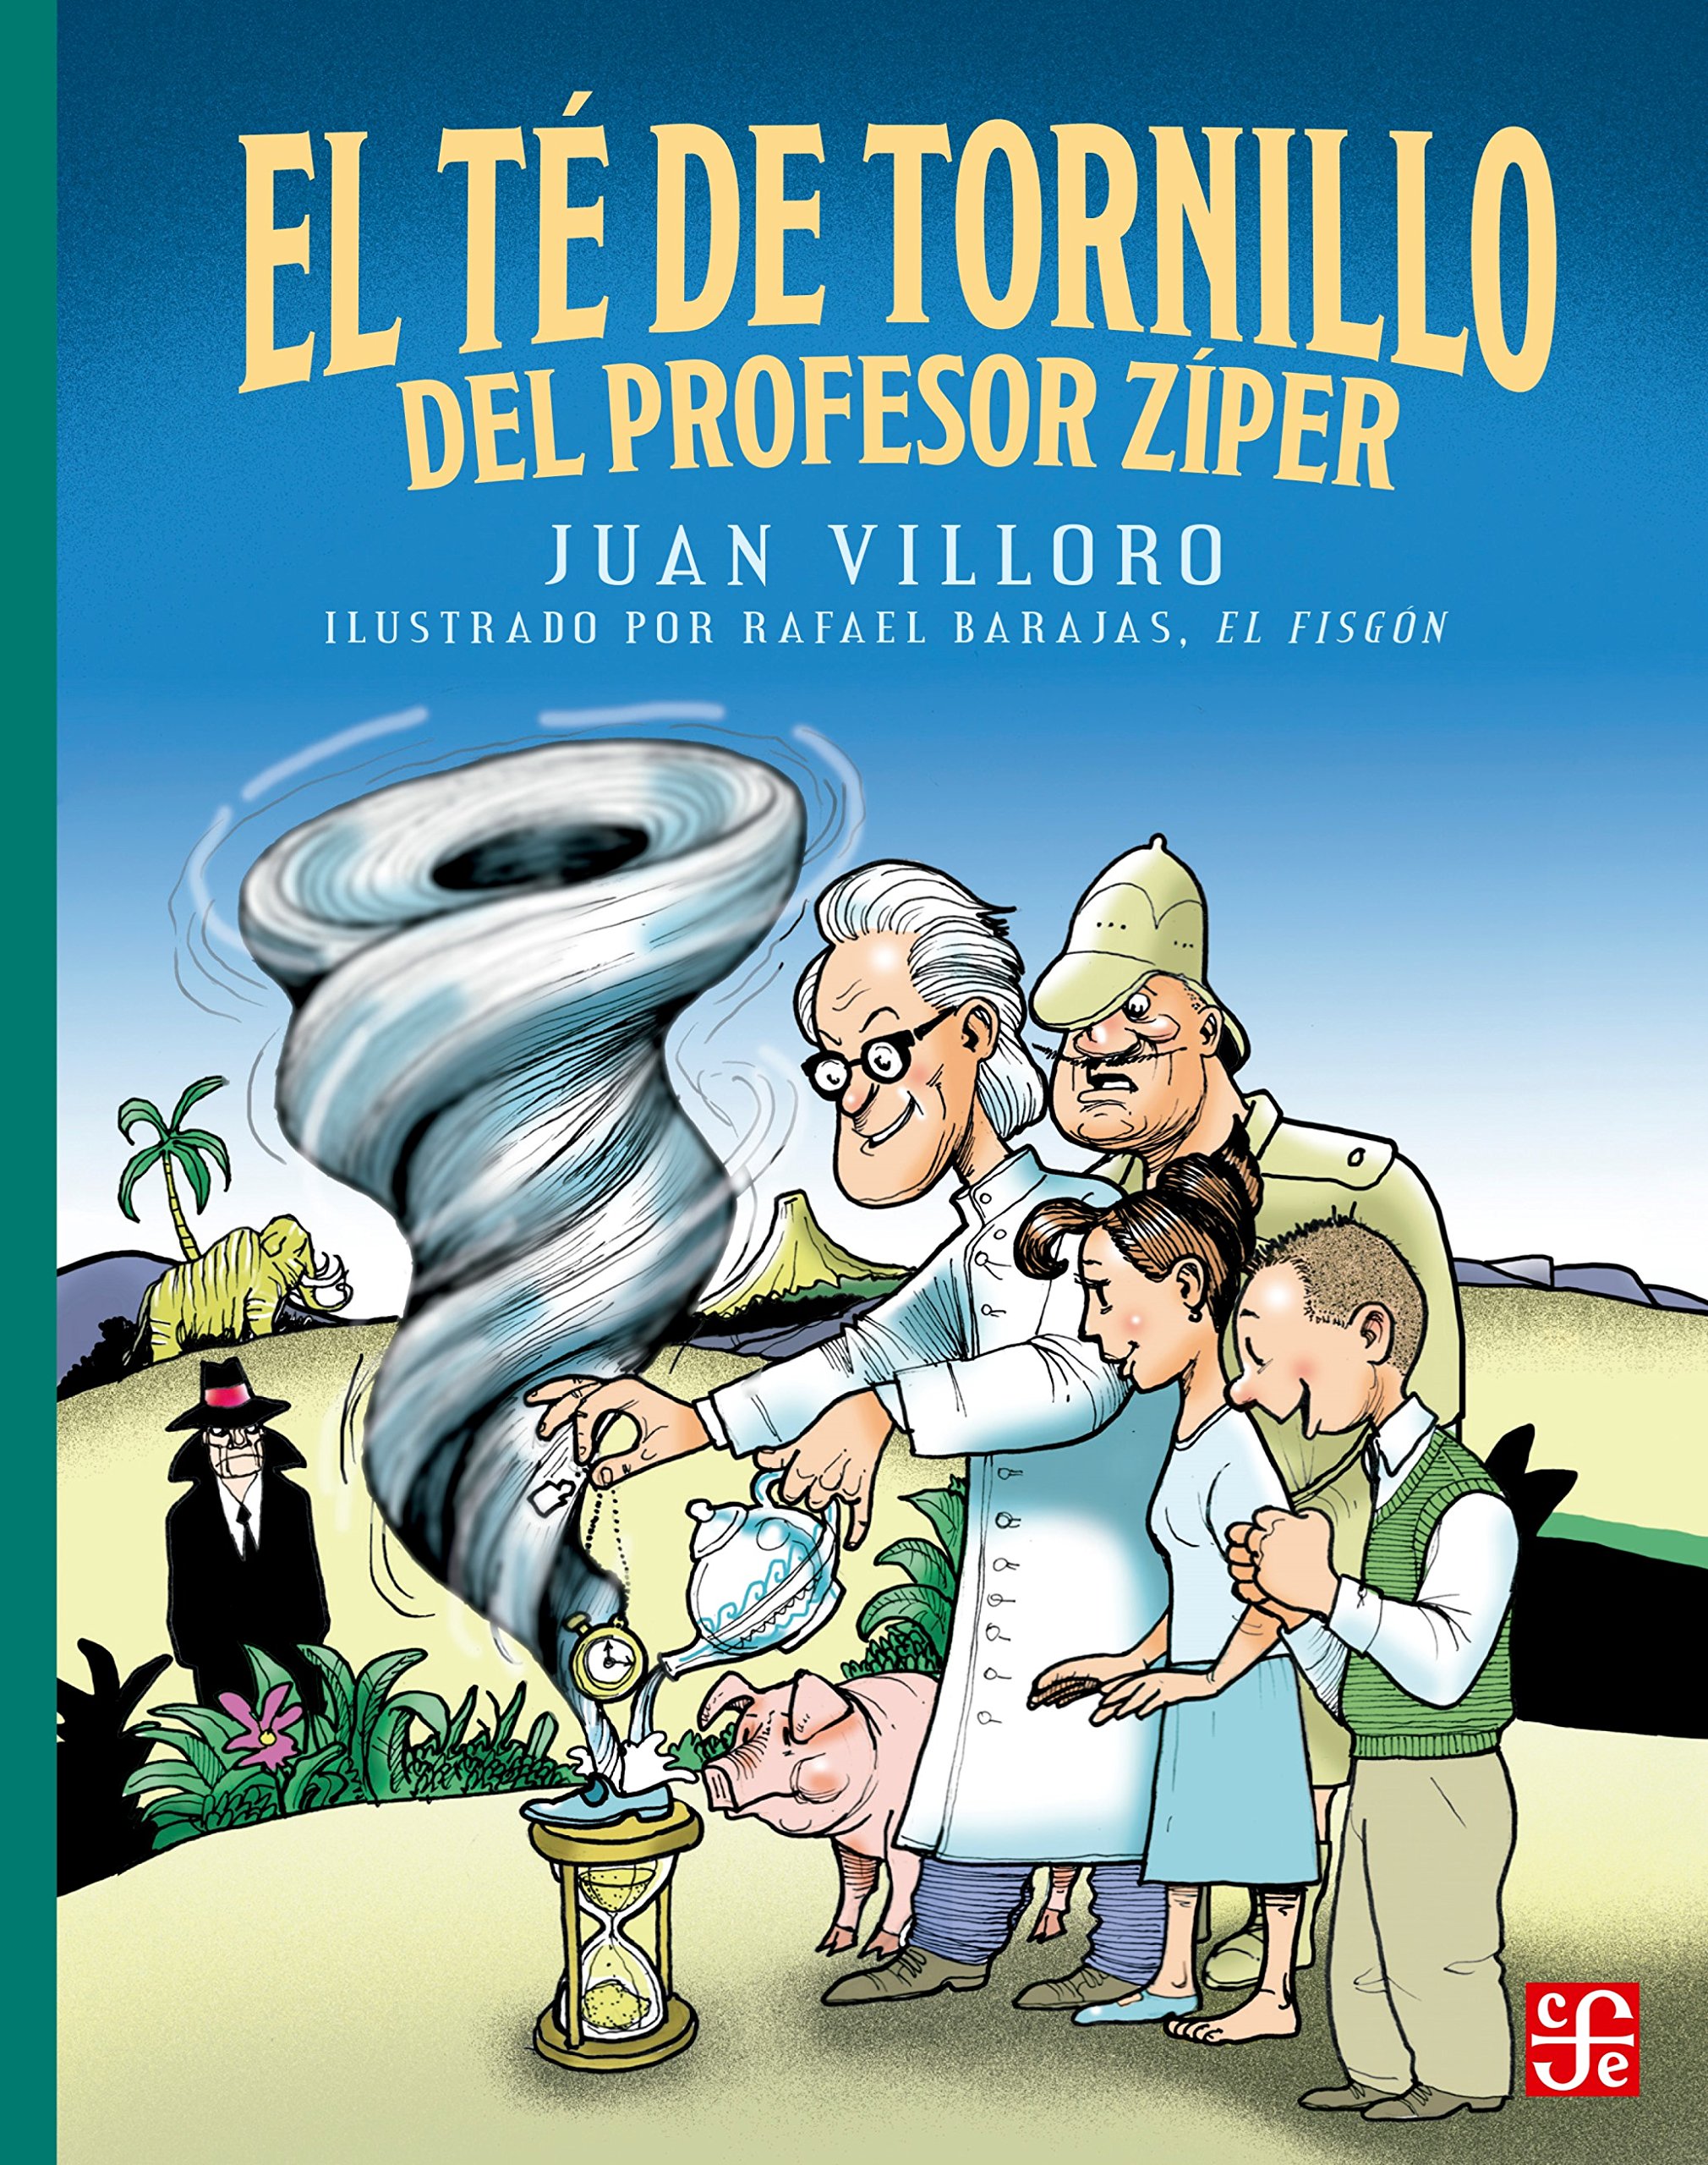 Libro: El Té de Tornillo del Profesor Ziper por Juan Villoro y Rafael Barajas "El Fisgón"